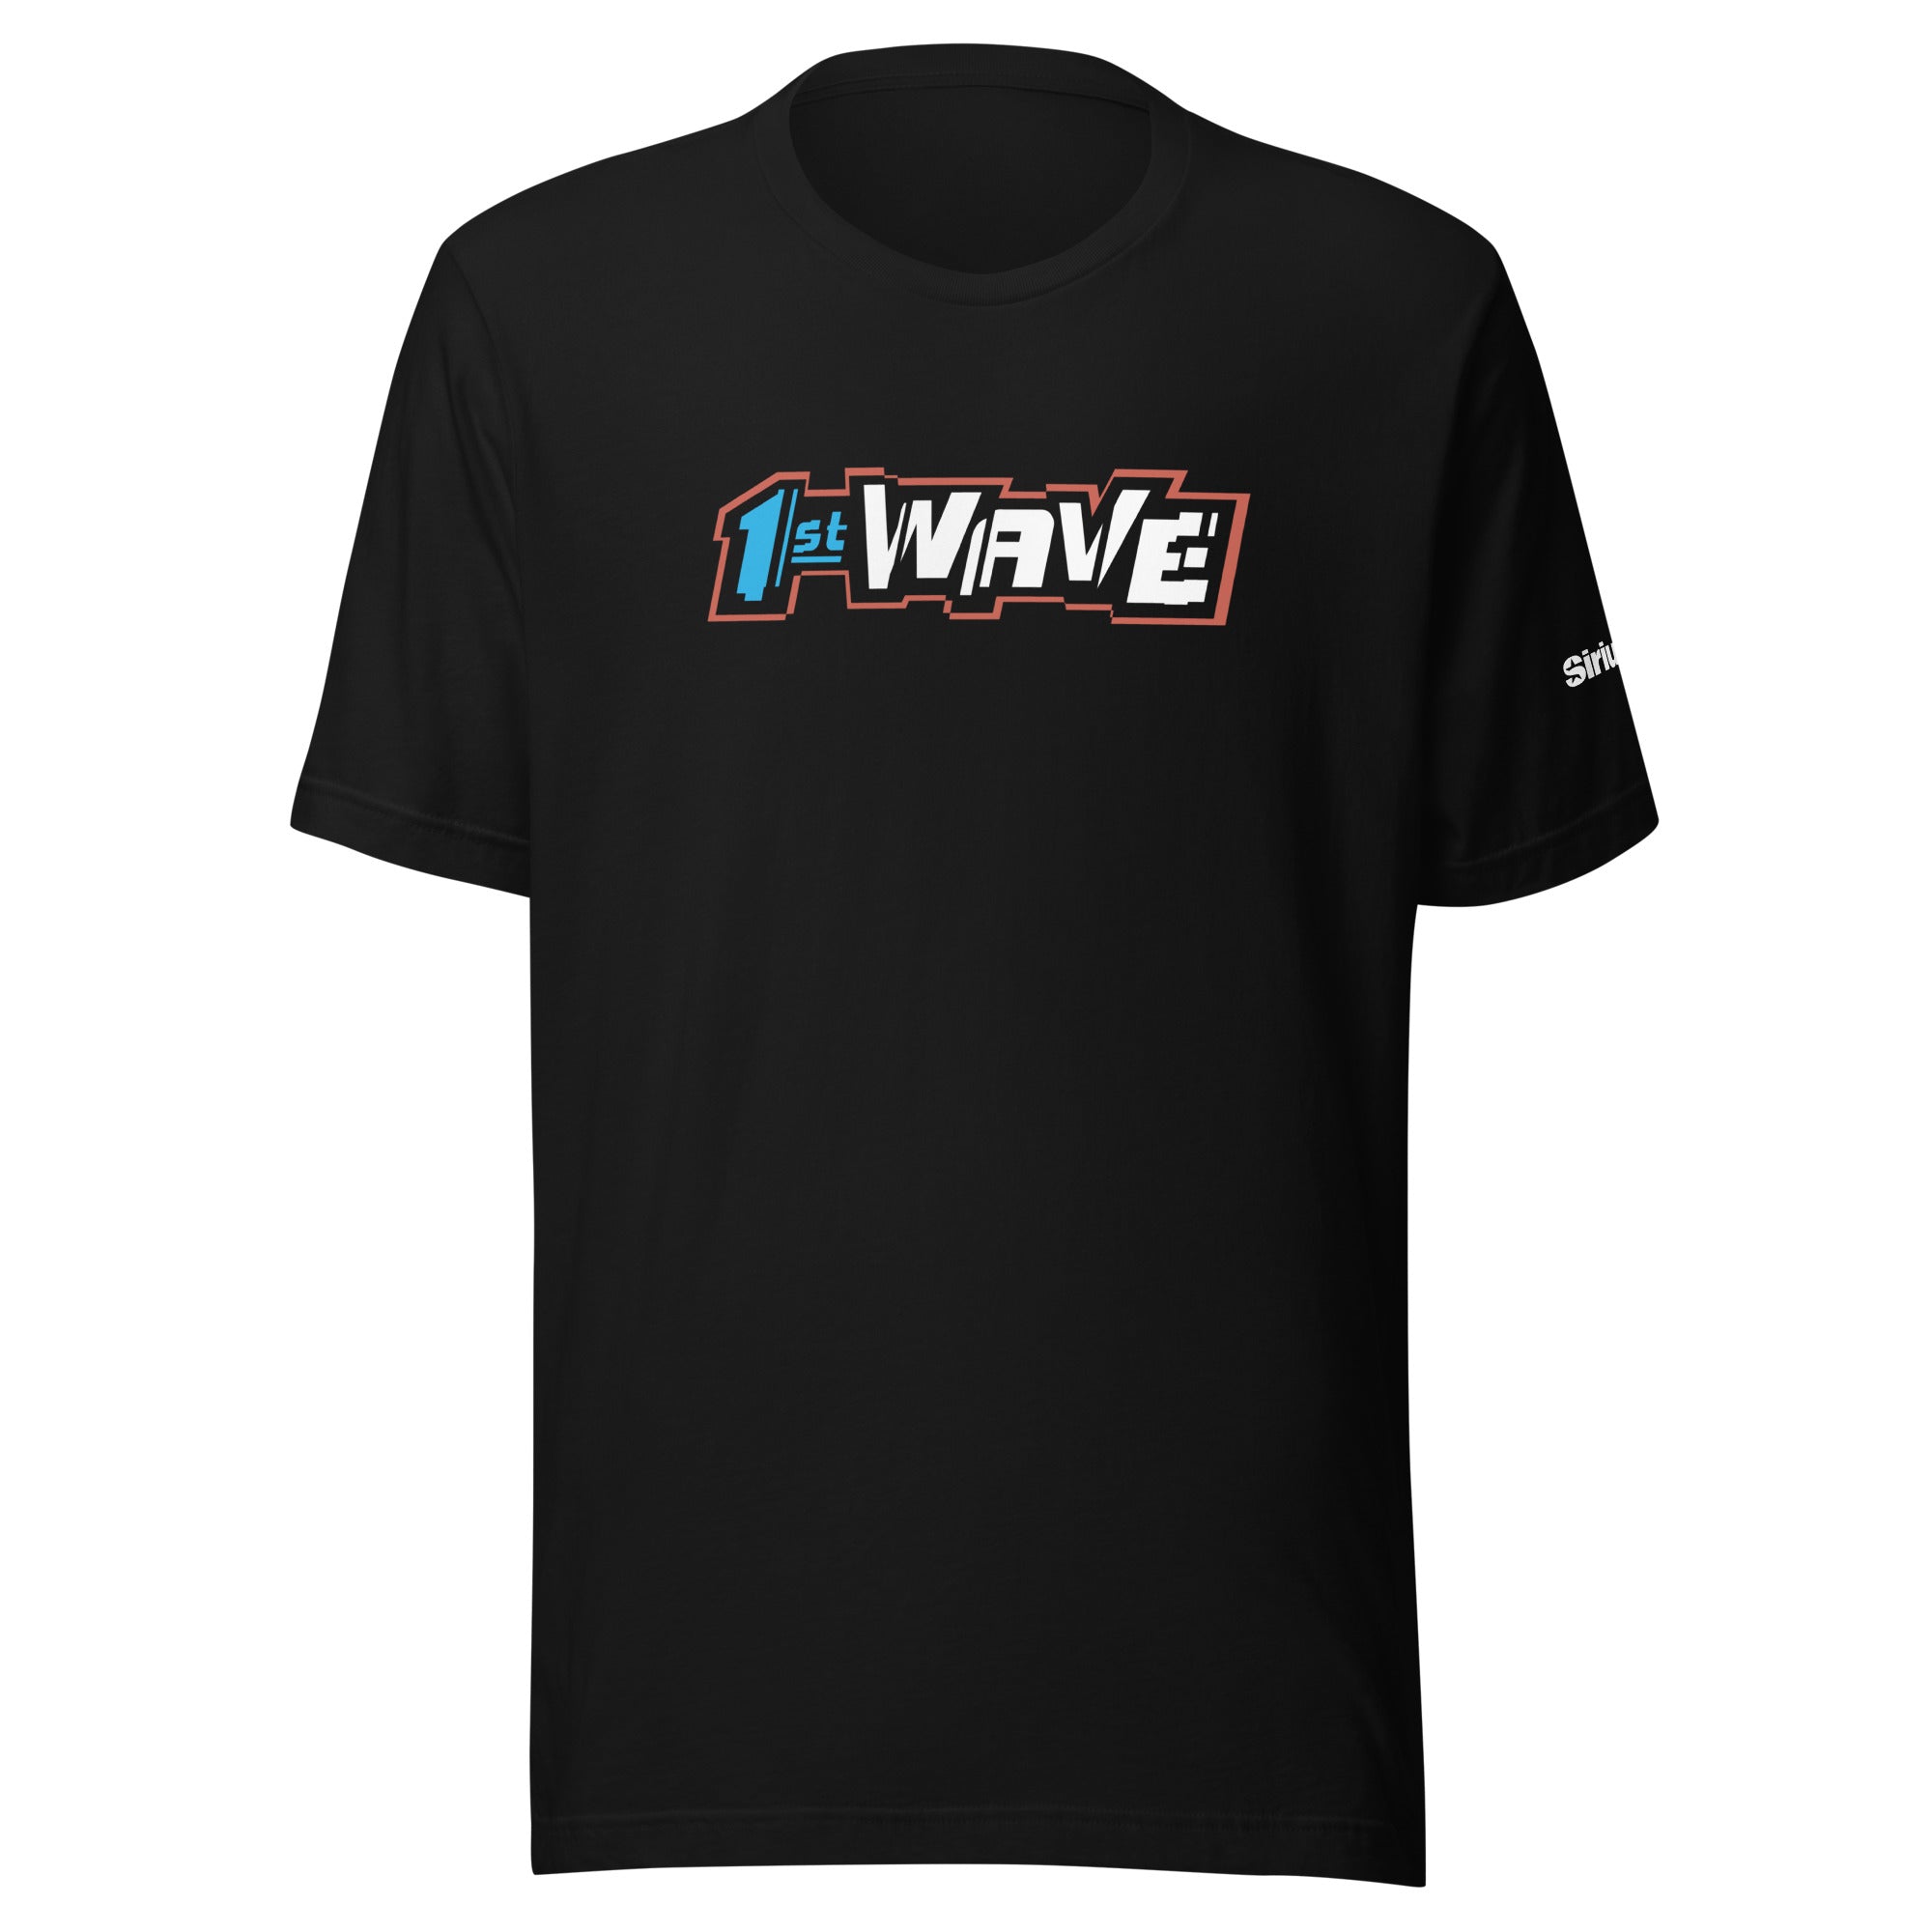 1st Wave: T-shirt (Black)